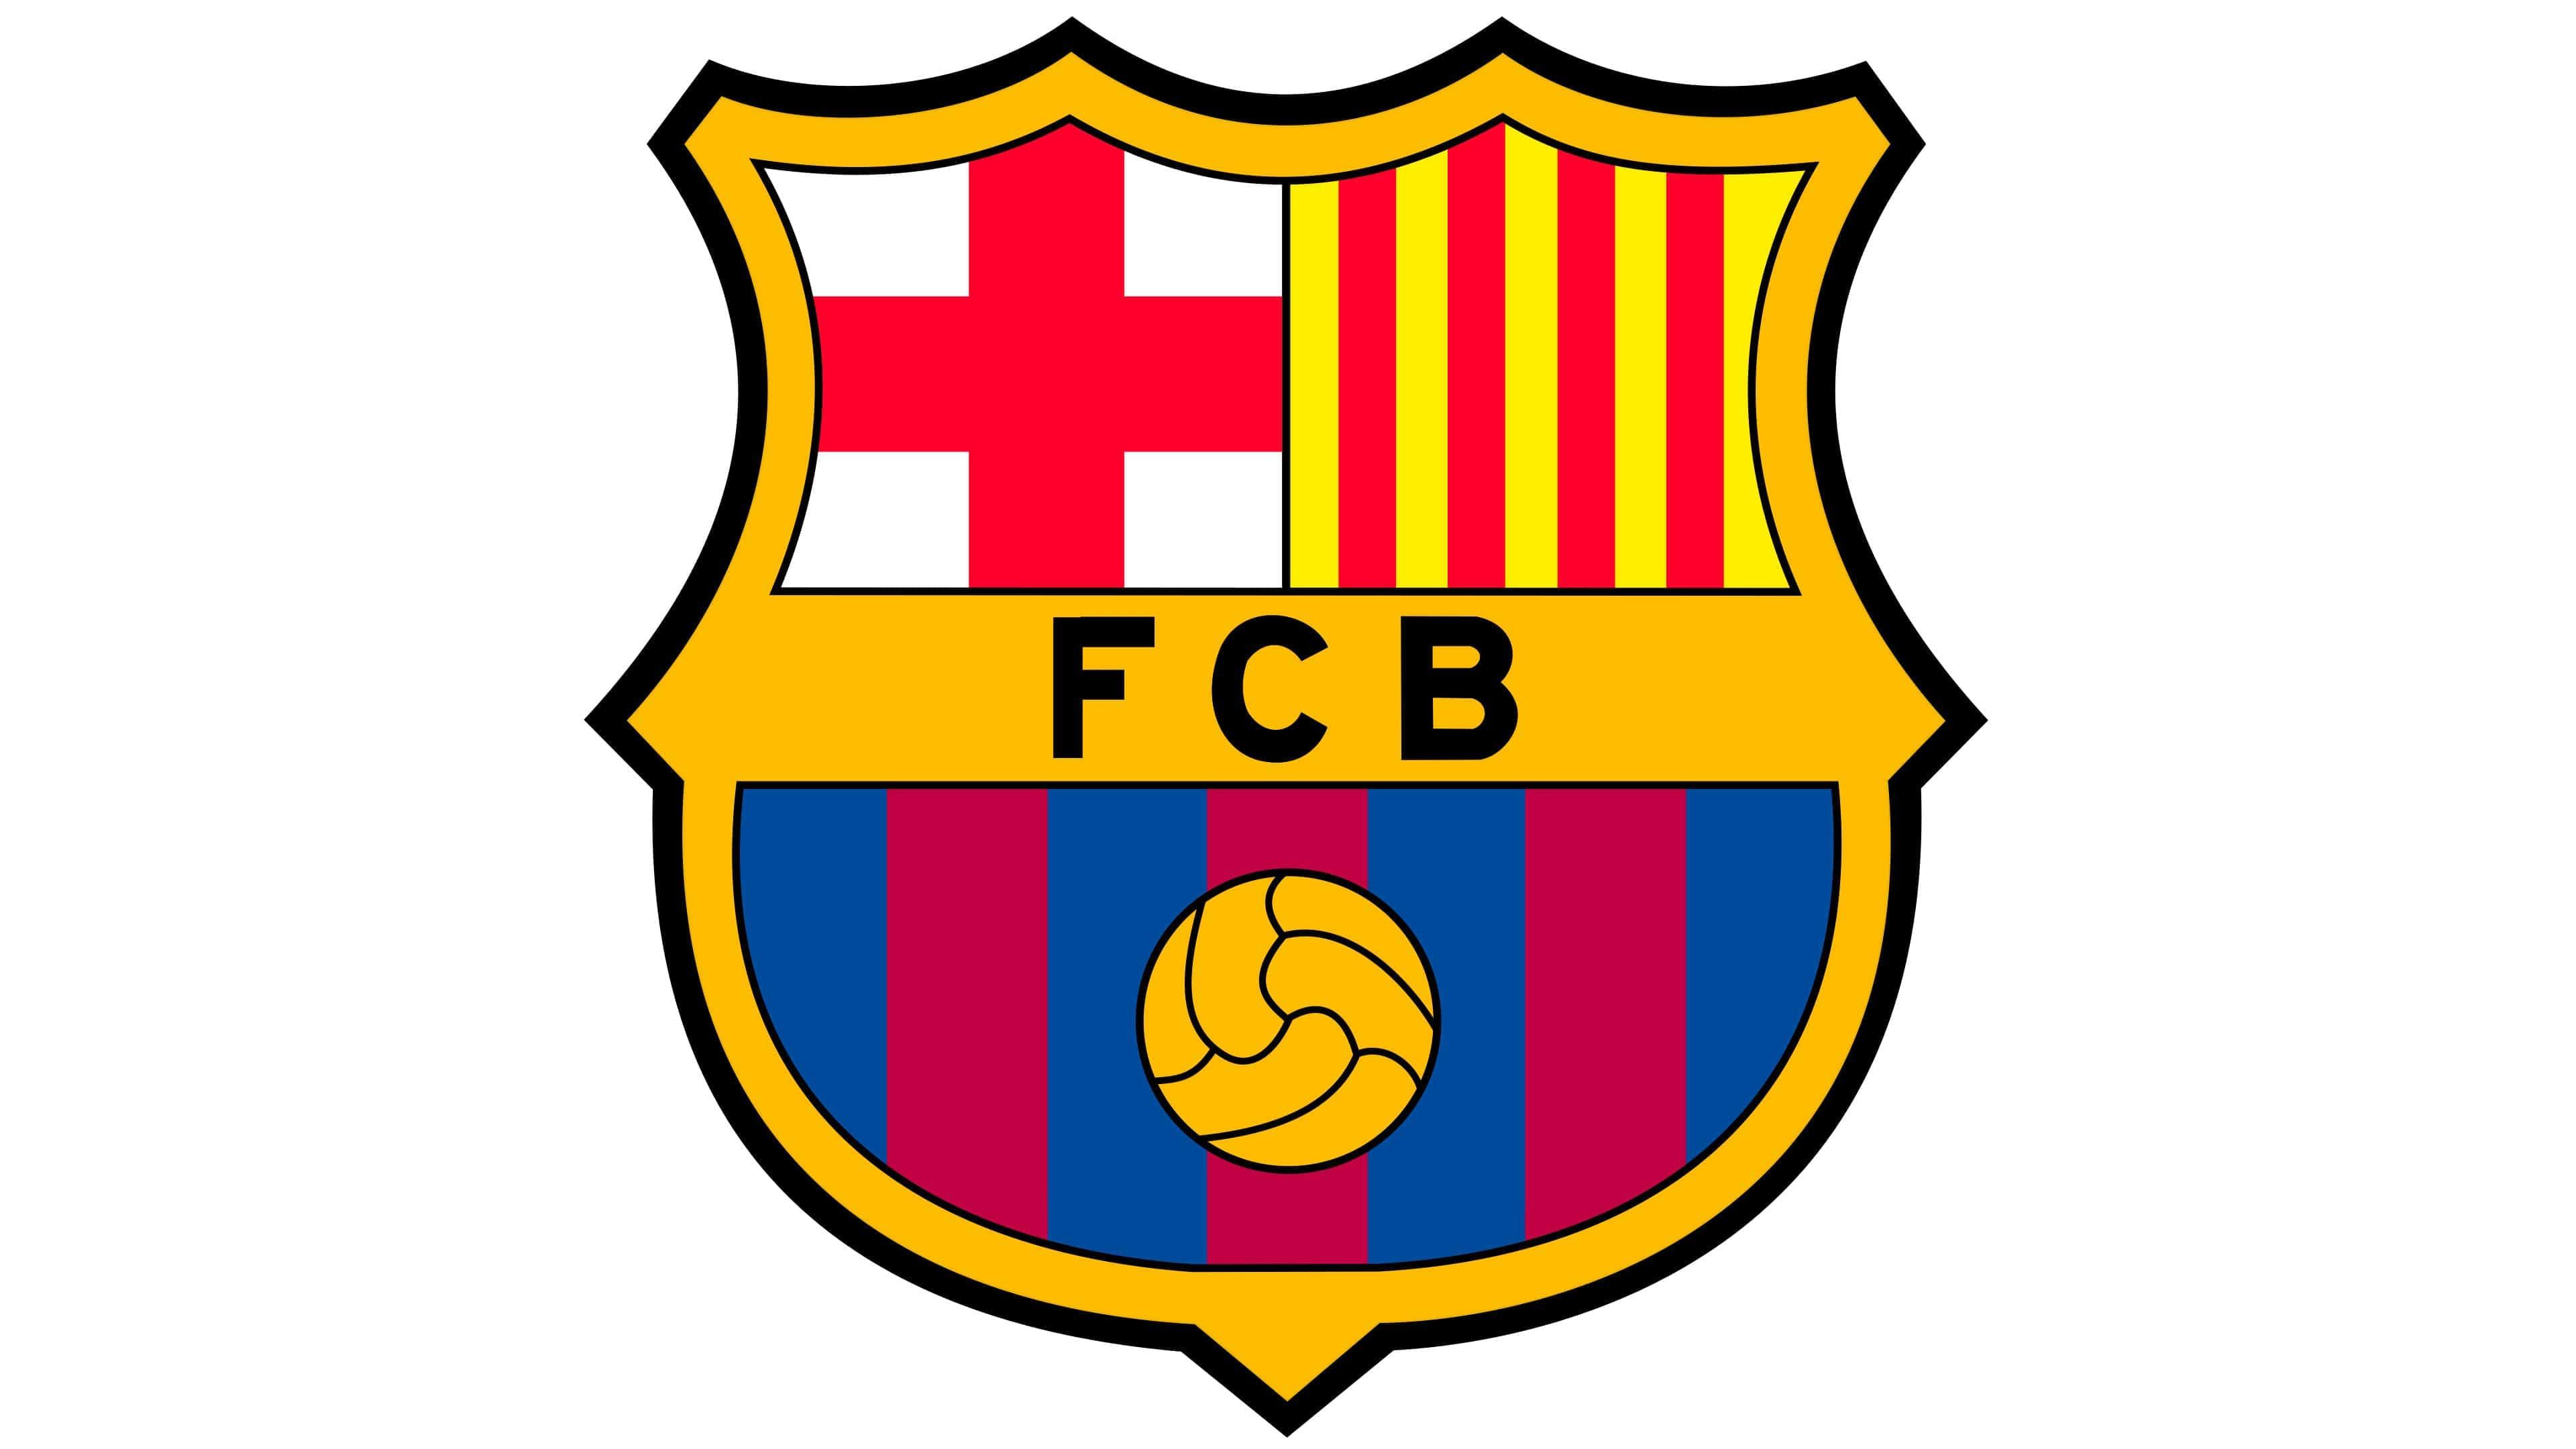 ¿El MCO del Mamitas FC (A.Sanchez) podra levantar al FC Barcelona?